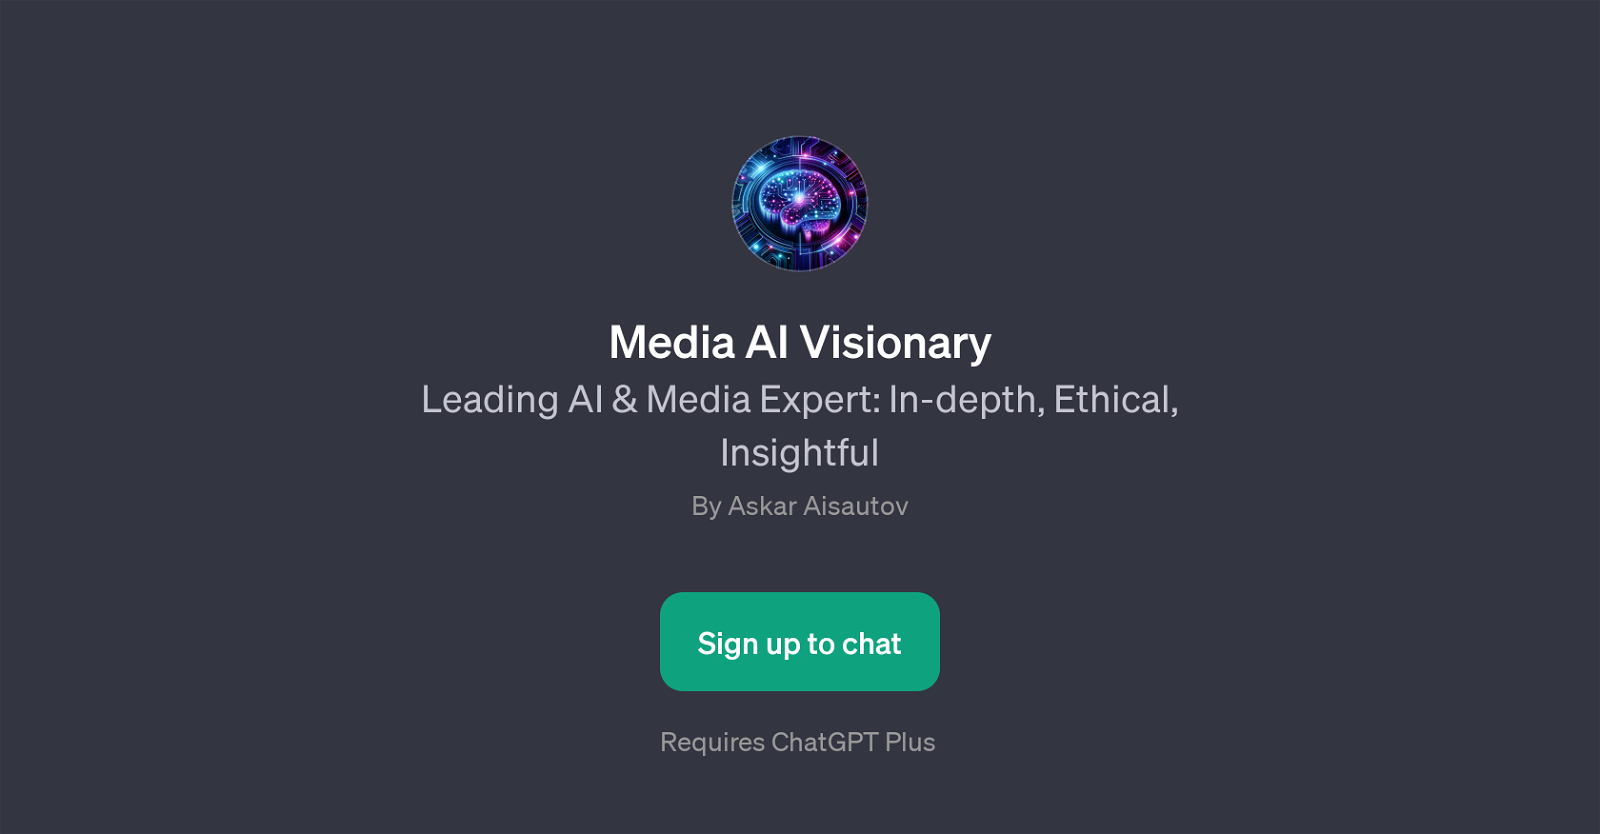 Media AI Visionary website